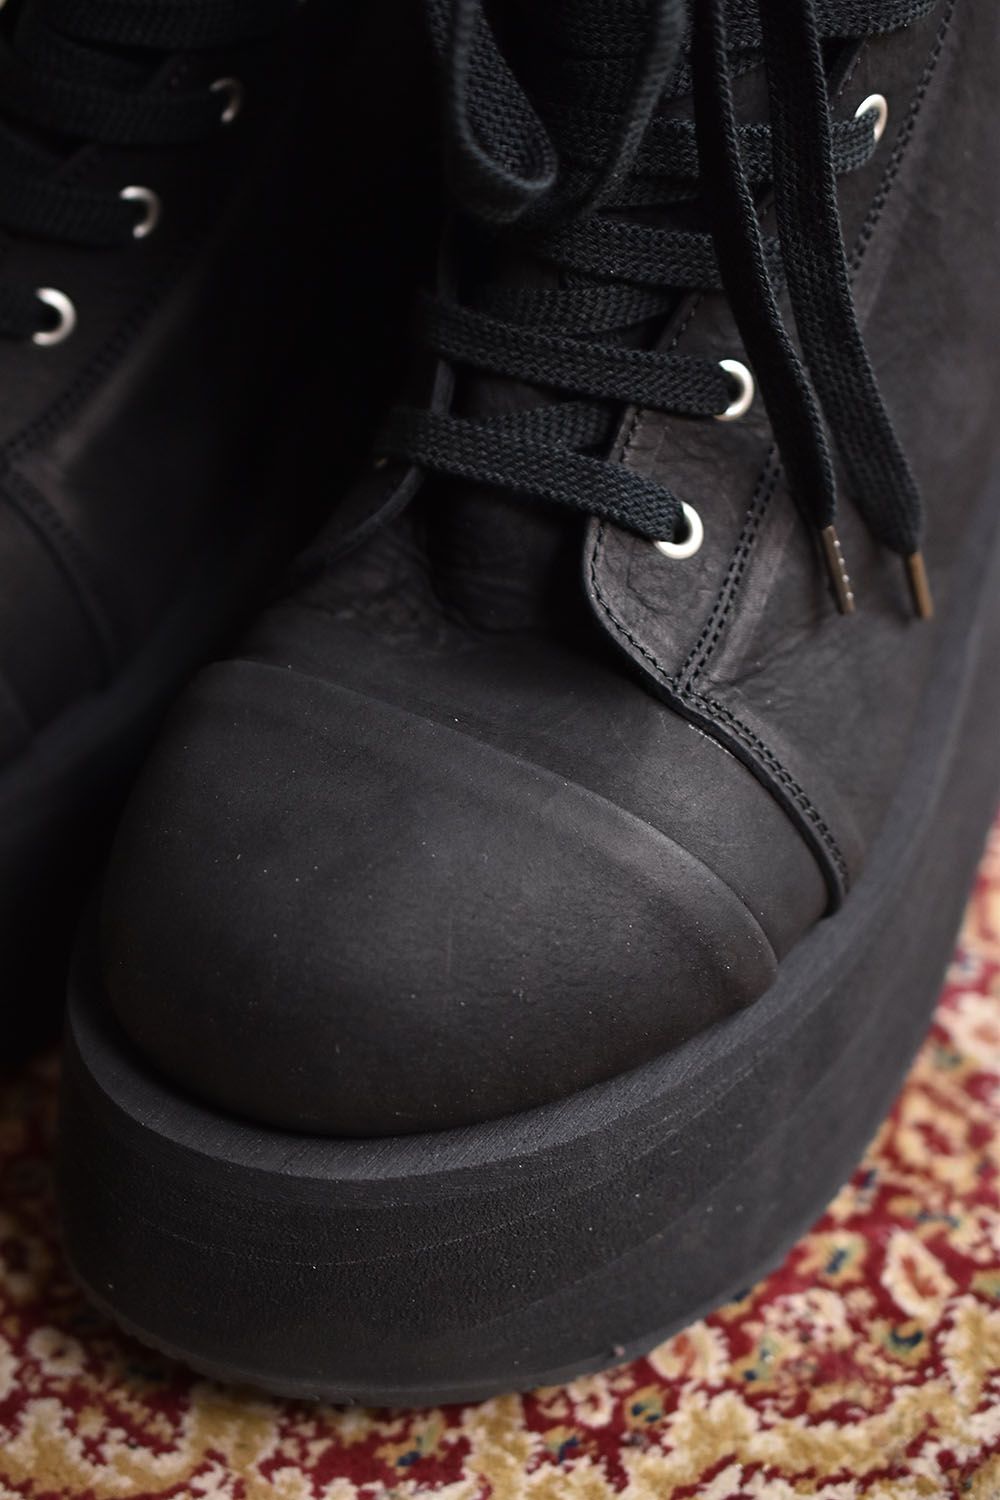 Platform Hi-cut Sneakers"Black×Black"/プラットホームハイカットスニーカー"ブラック×ブラック"